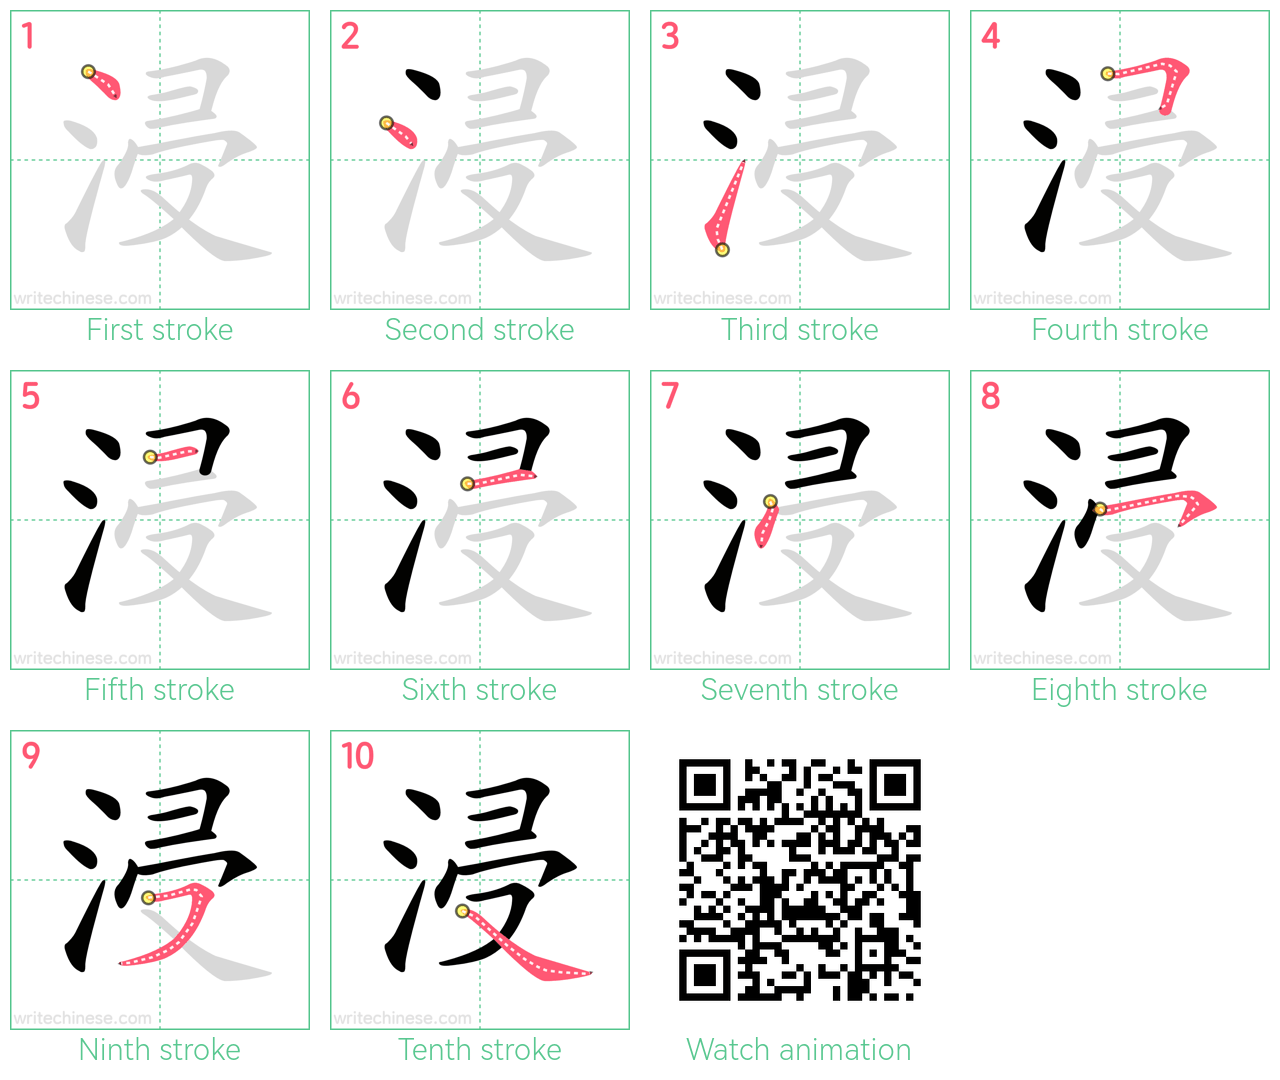 浸 step-by-step stroke order diagrams